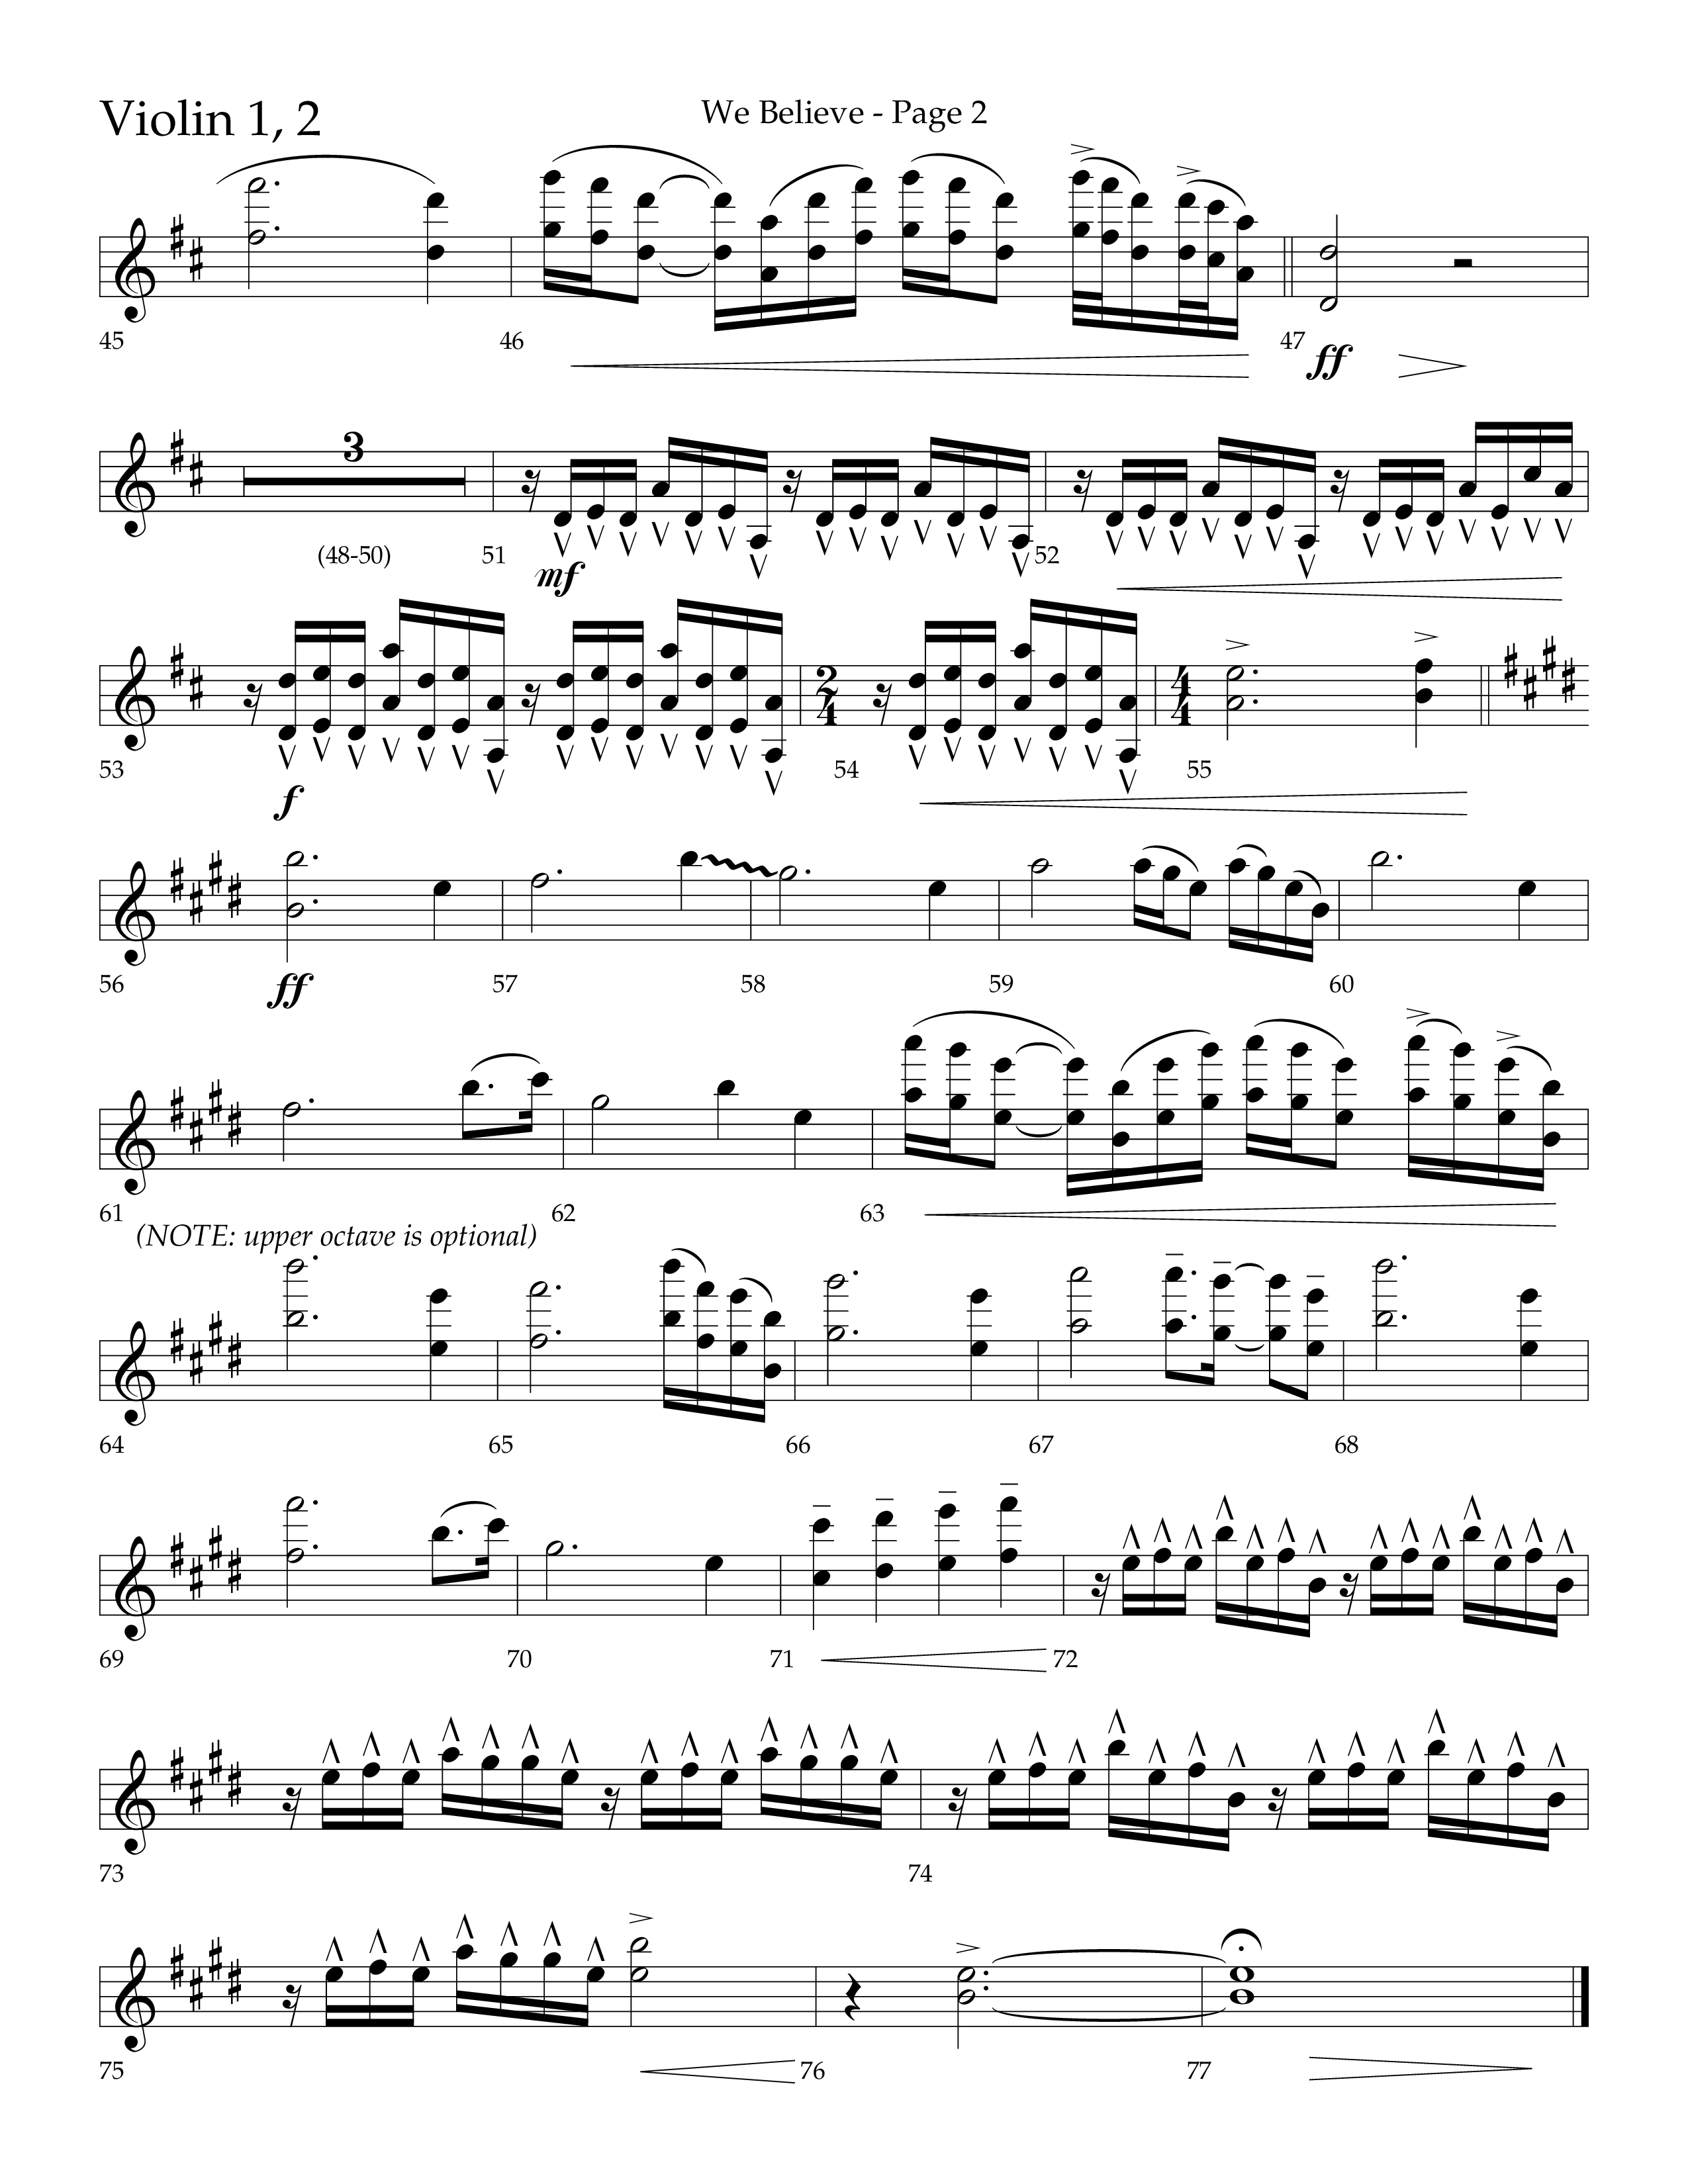 We Believe (Choral Anthem SATB) Violin 1/2 (Lifeway Choral / Arr. Cliff Duren)